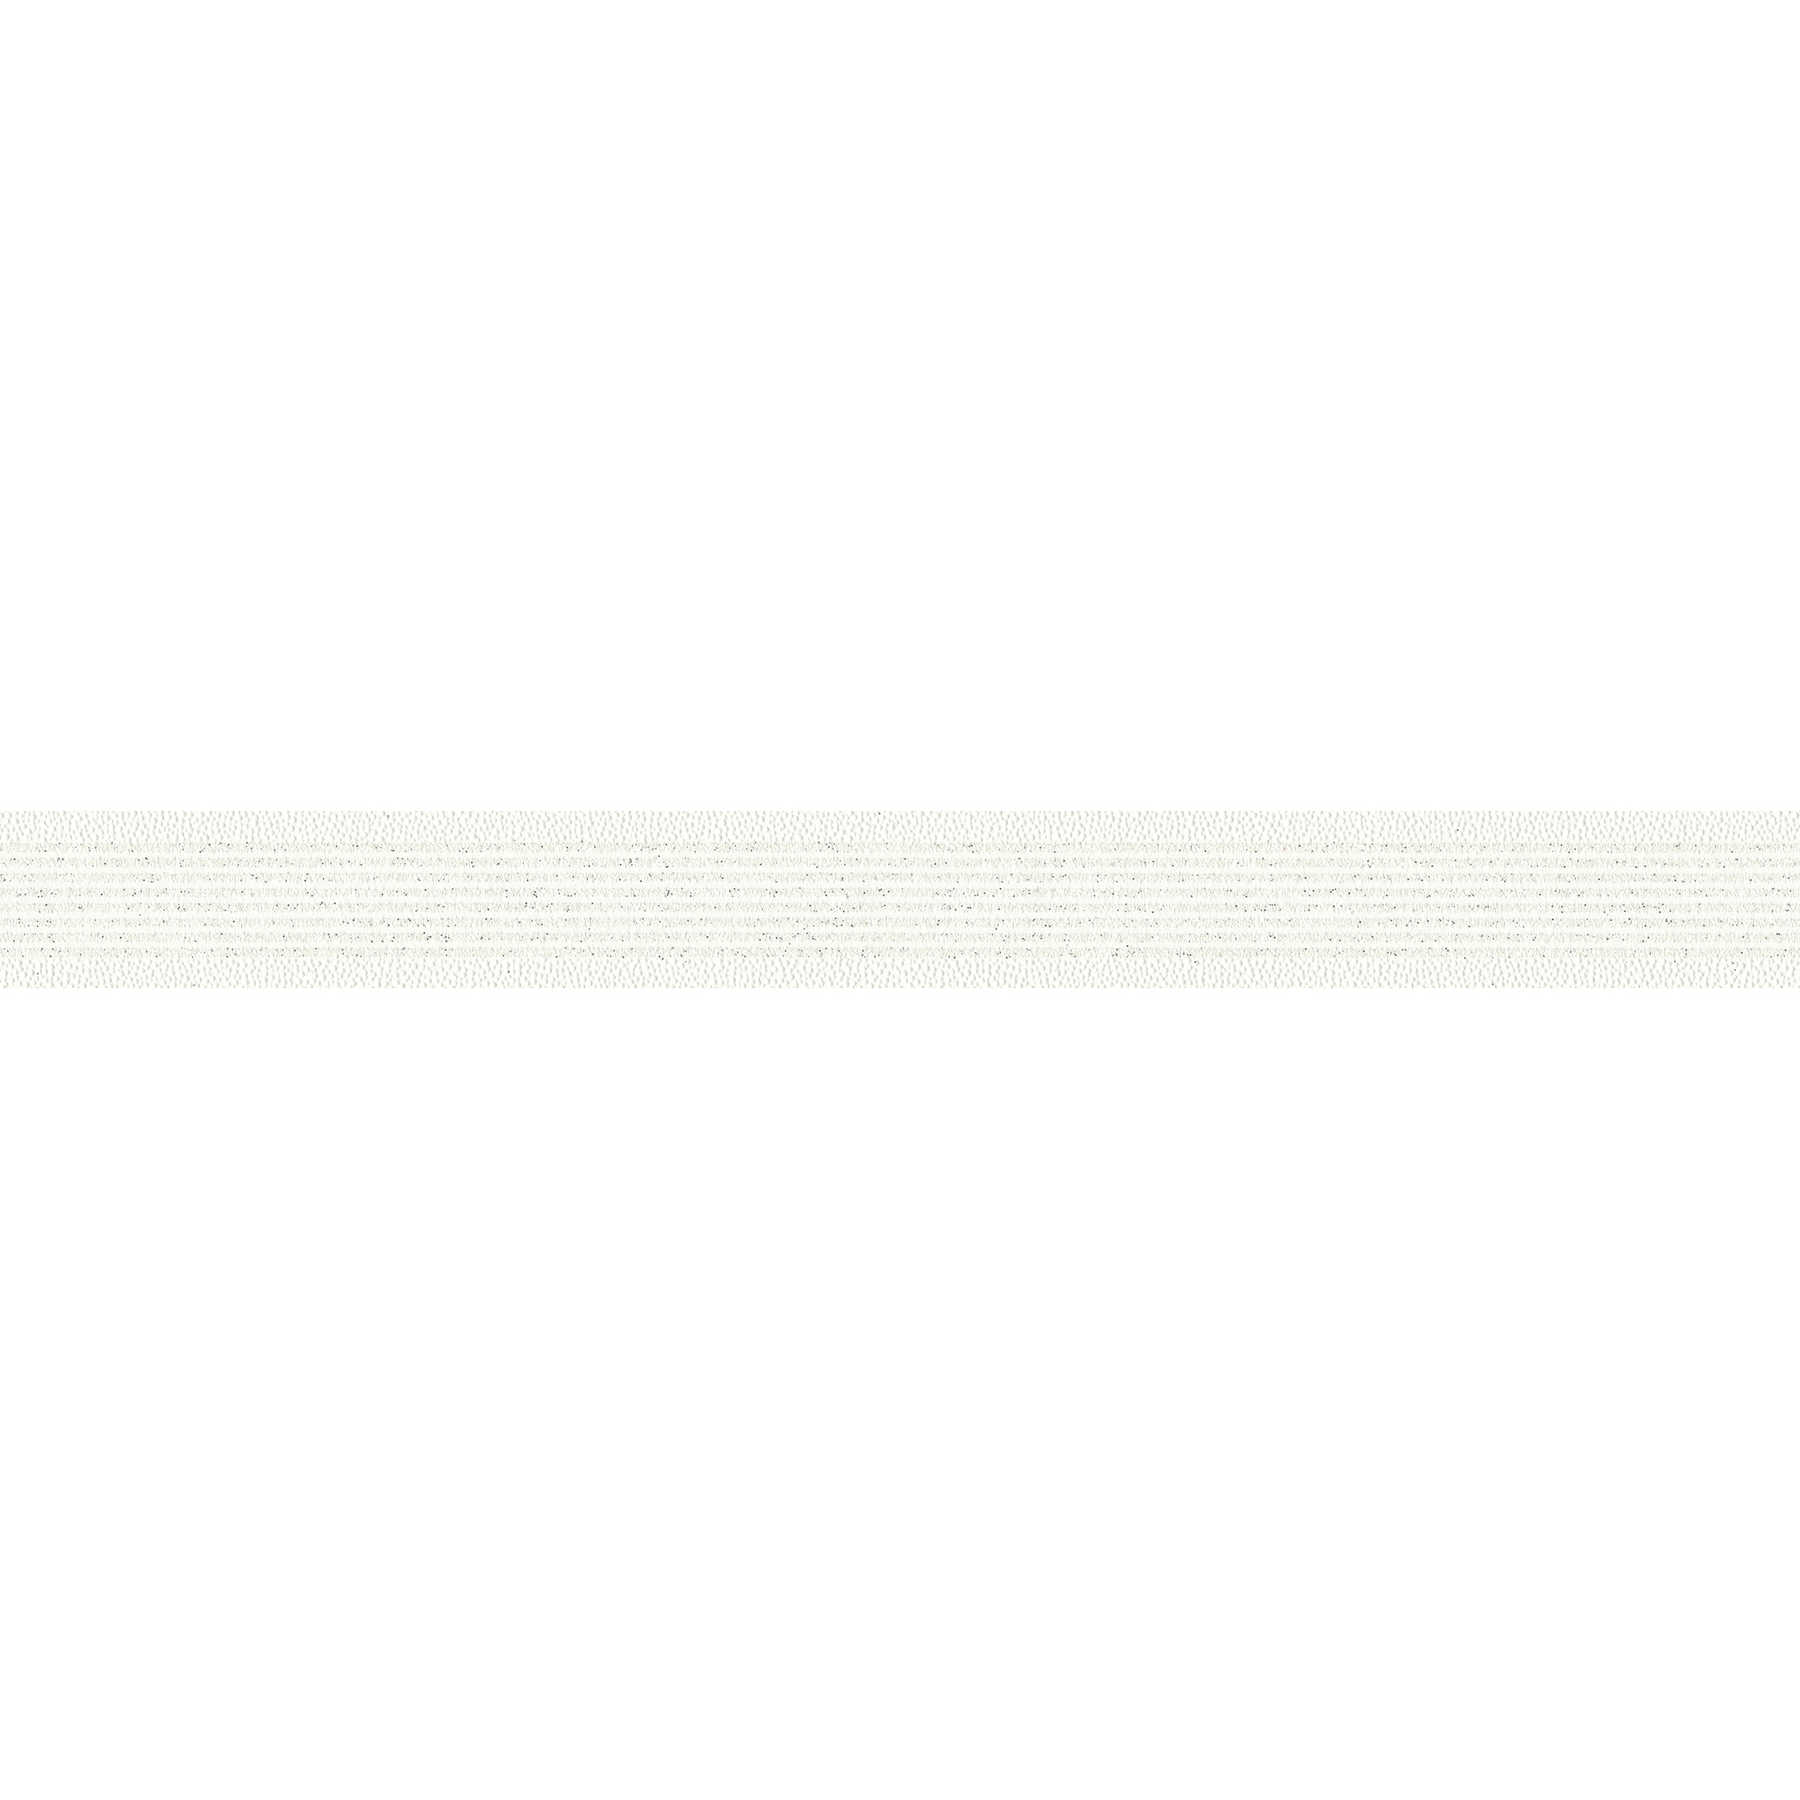         Tapetenbordüre mit Glitzerstreifen & Linienmuster – Weiß
    